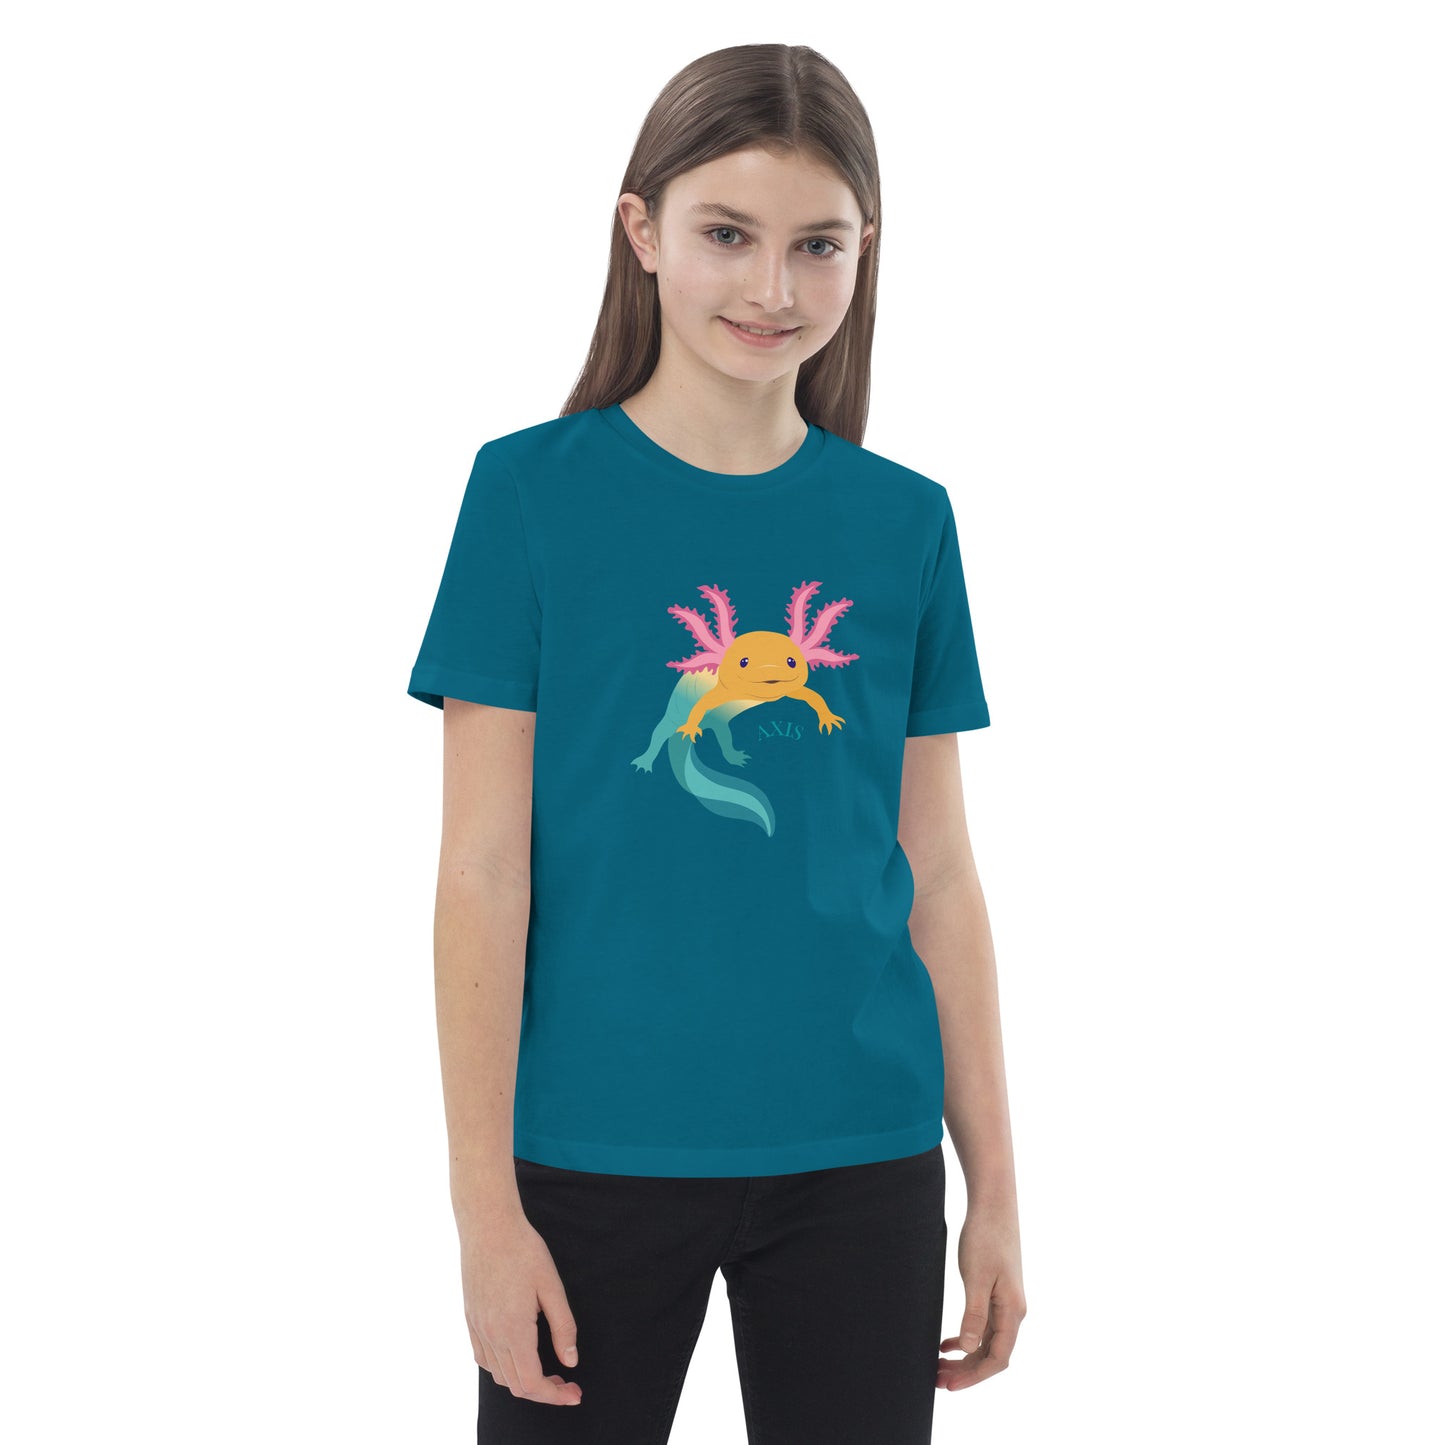 Barn T-shirt i färgen oceanblå. Ekologisk bomull och tryck med axolotlen Axis.